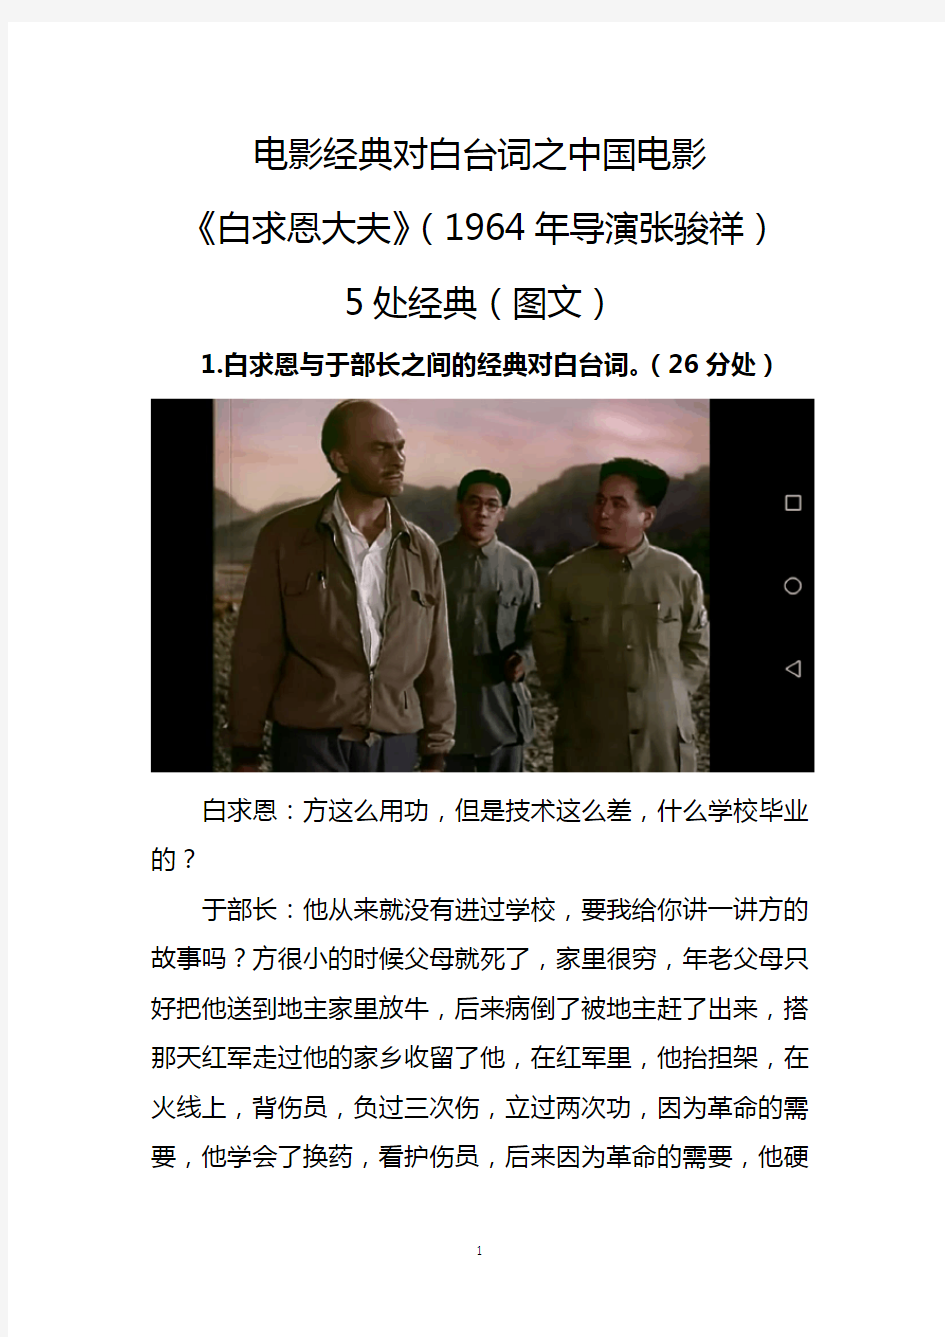 电影经典对白台词之中国电影《白求恩大夫》(1964年导演张骏祥)5处经典(图文)